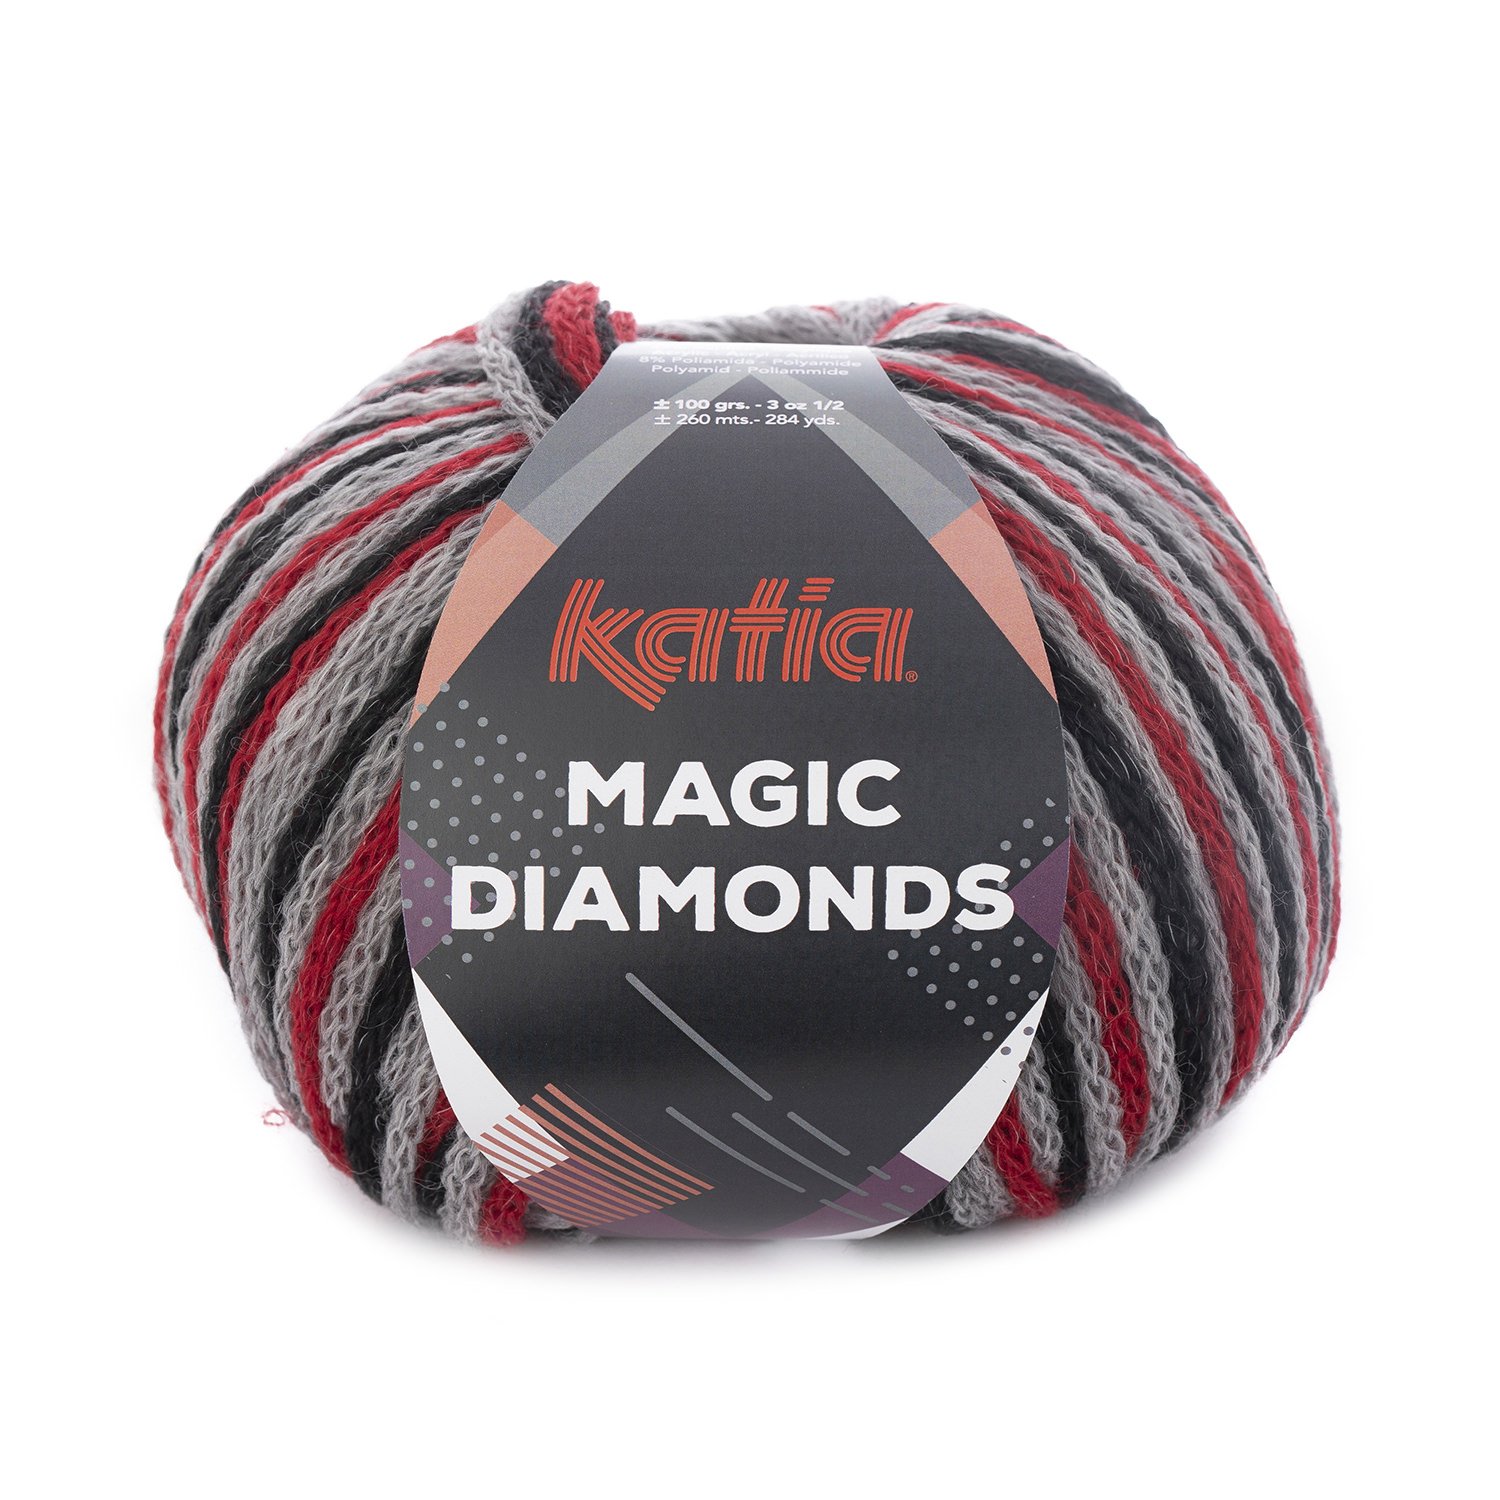 https://www.katia.com/files/lanas/1147/laine-fil-magicdiamonds-tricoter-laine-acrylique-polyamide-rouge-gris-noir-automne-hiver-katia-53-fhd.jpg